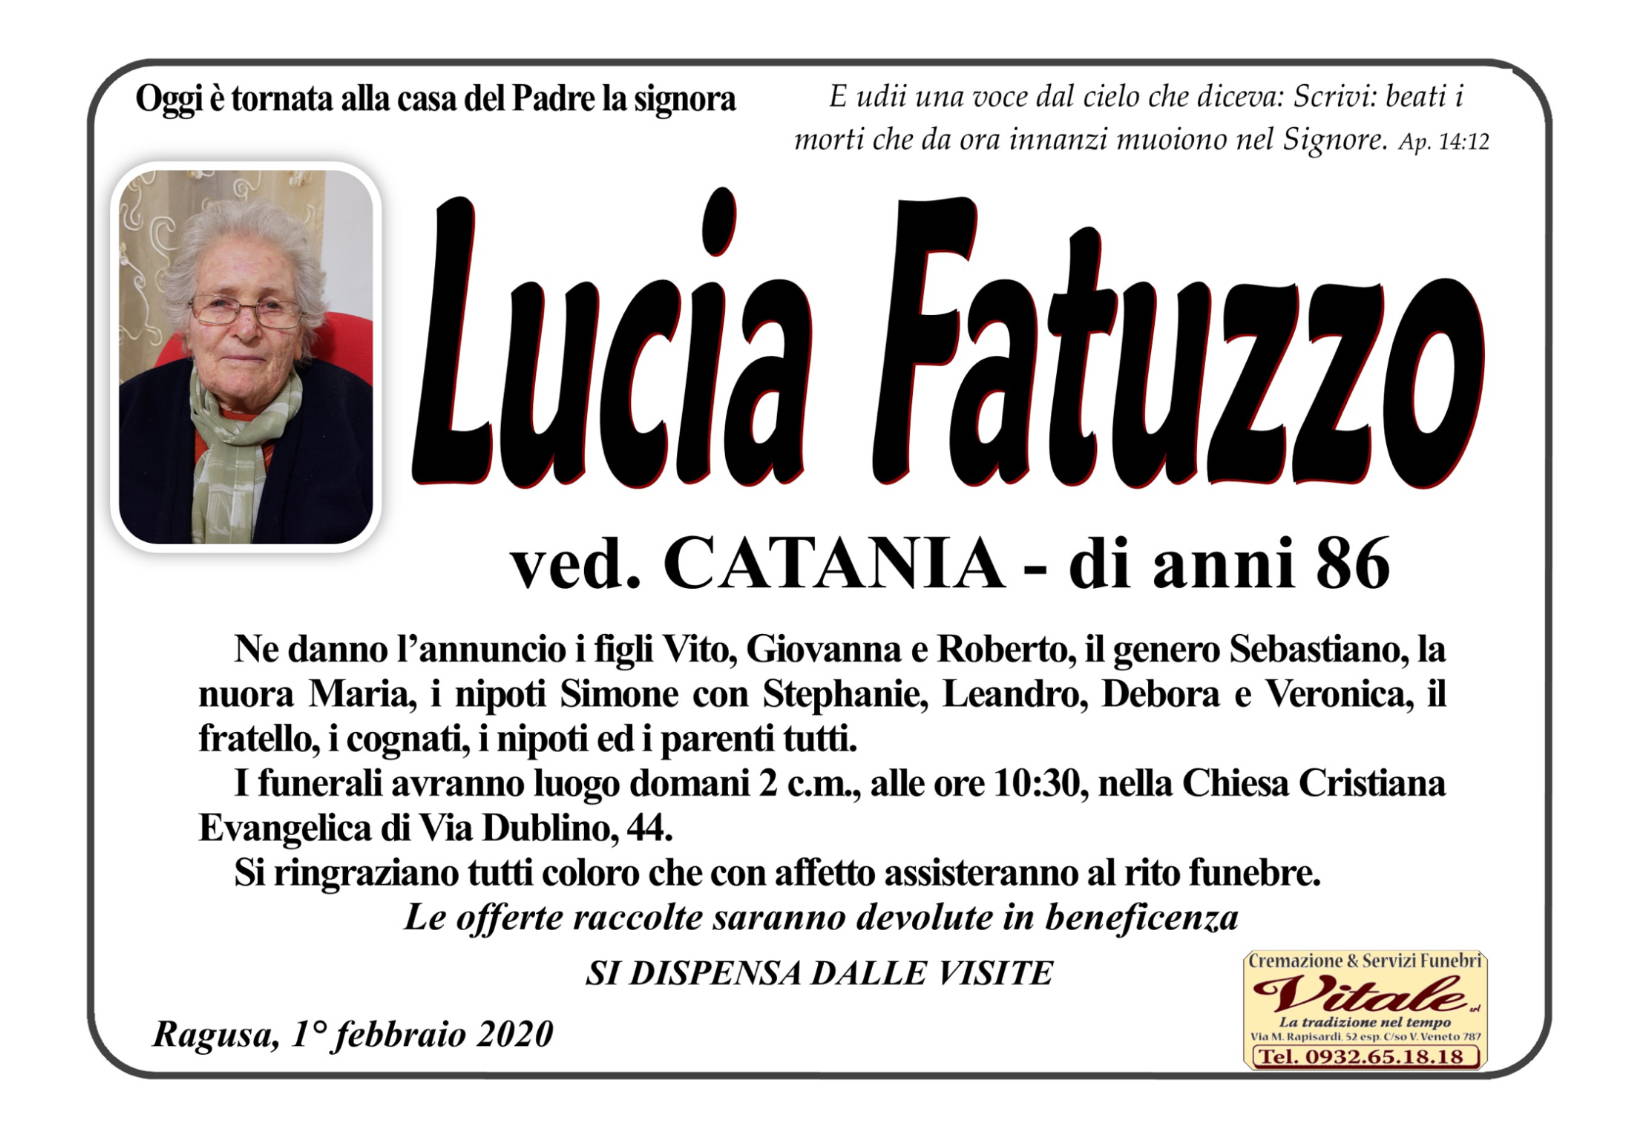 Lucia Fatuzzo